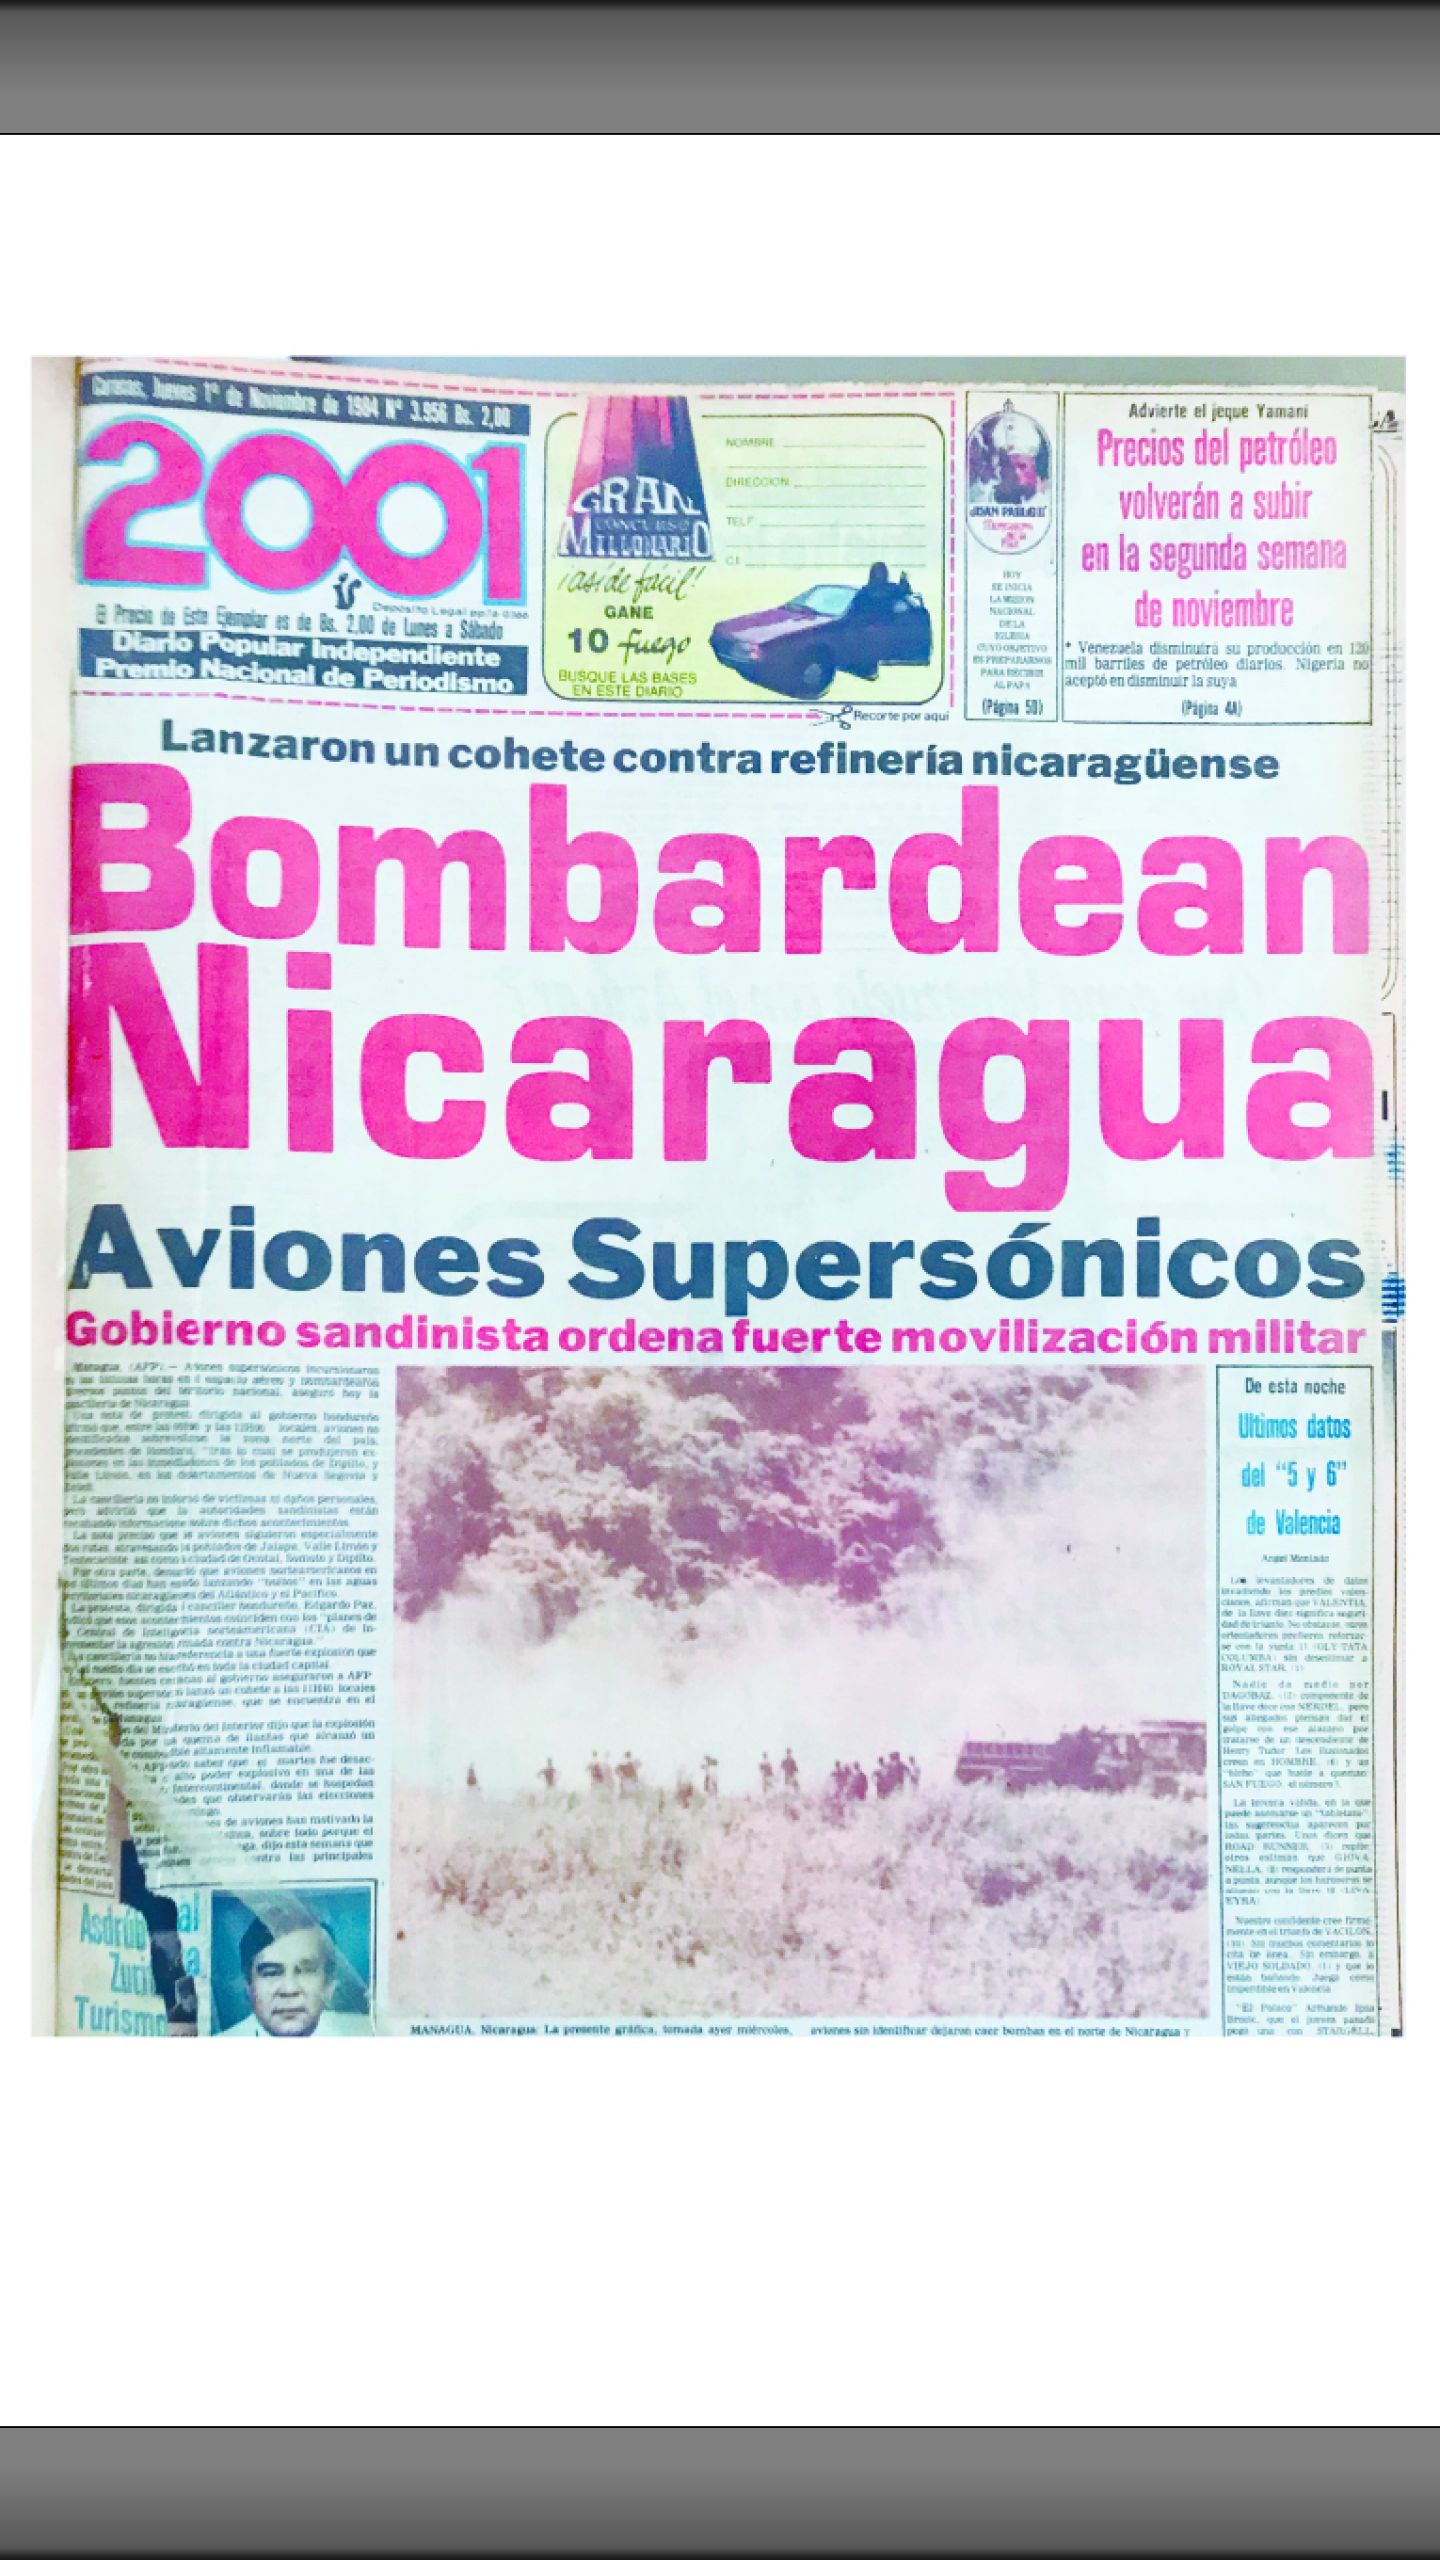 Bombardean Nicaragua con aviones supersónicos (2001, 01/11/1984)